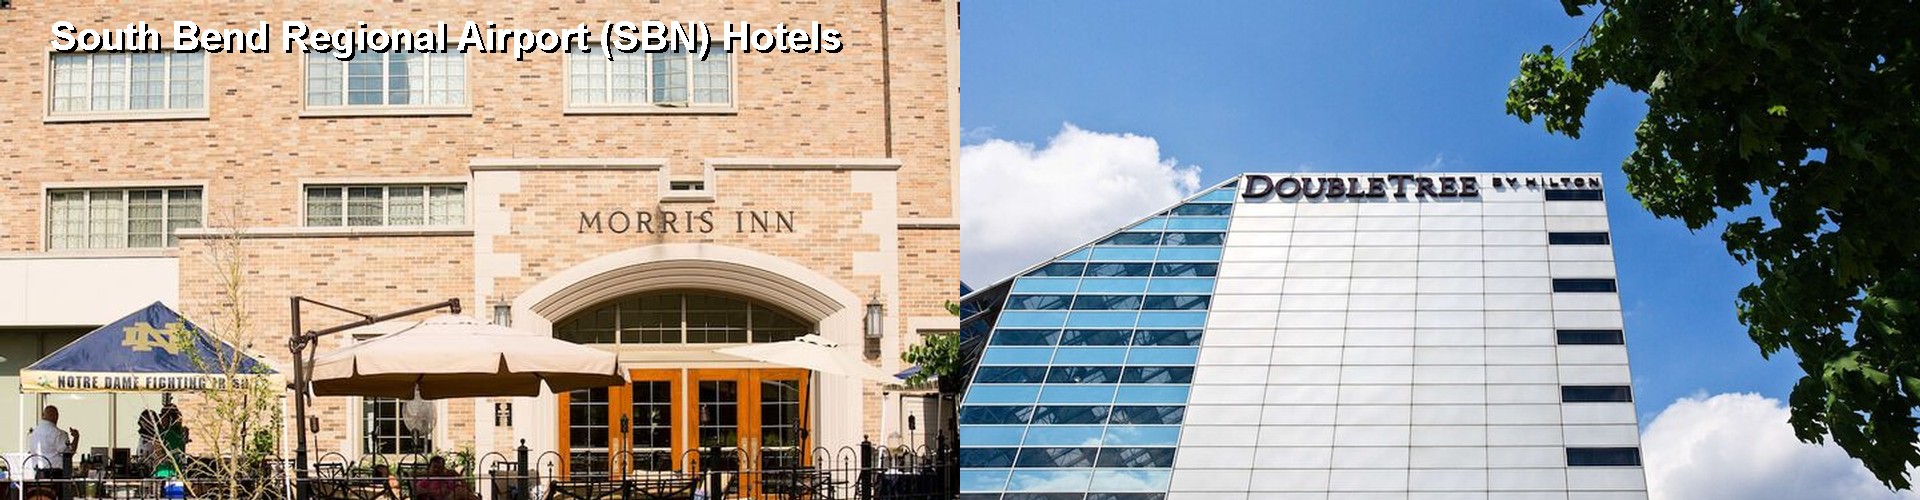 4 Best Hotels near South Bend Regional Airport (SBN)